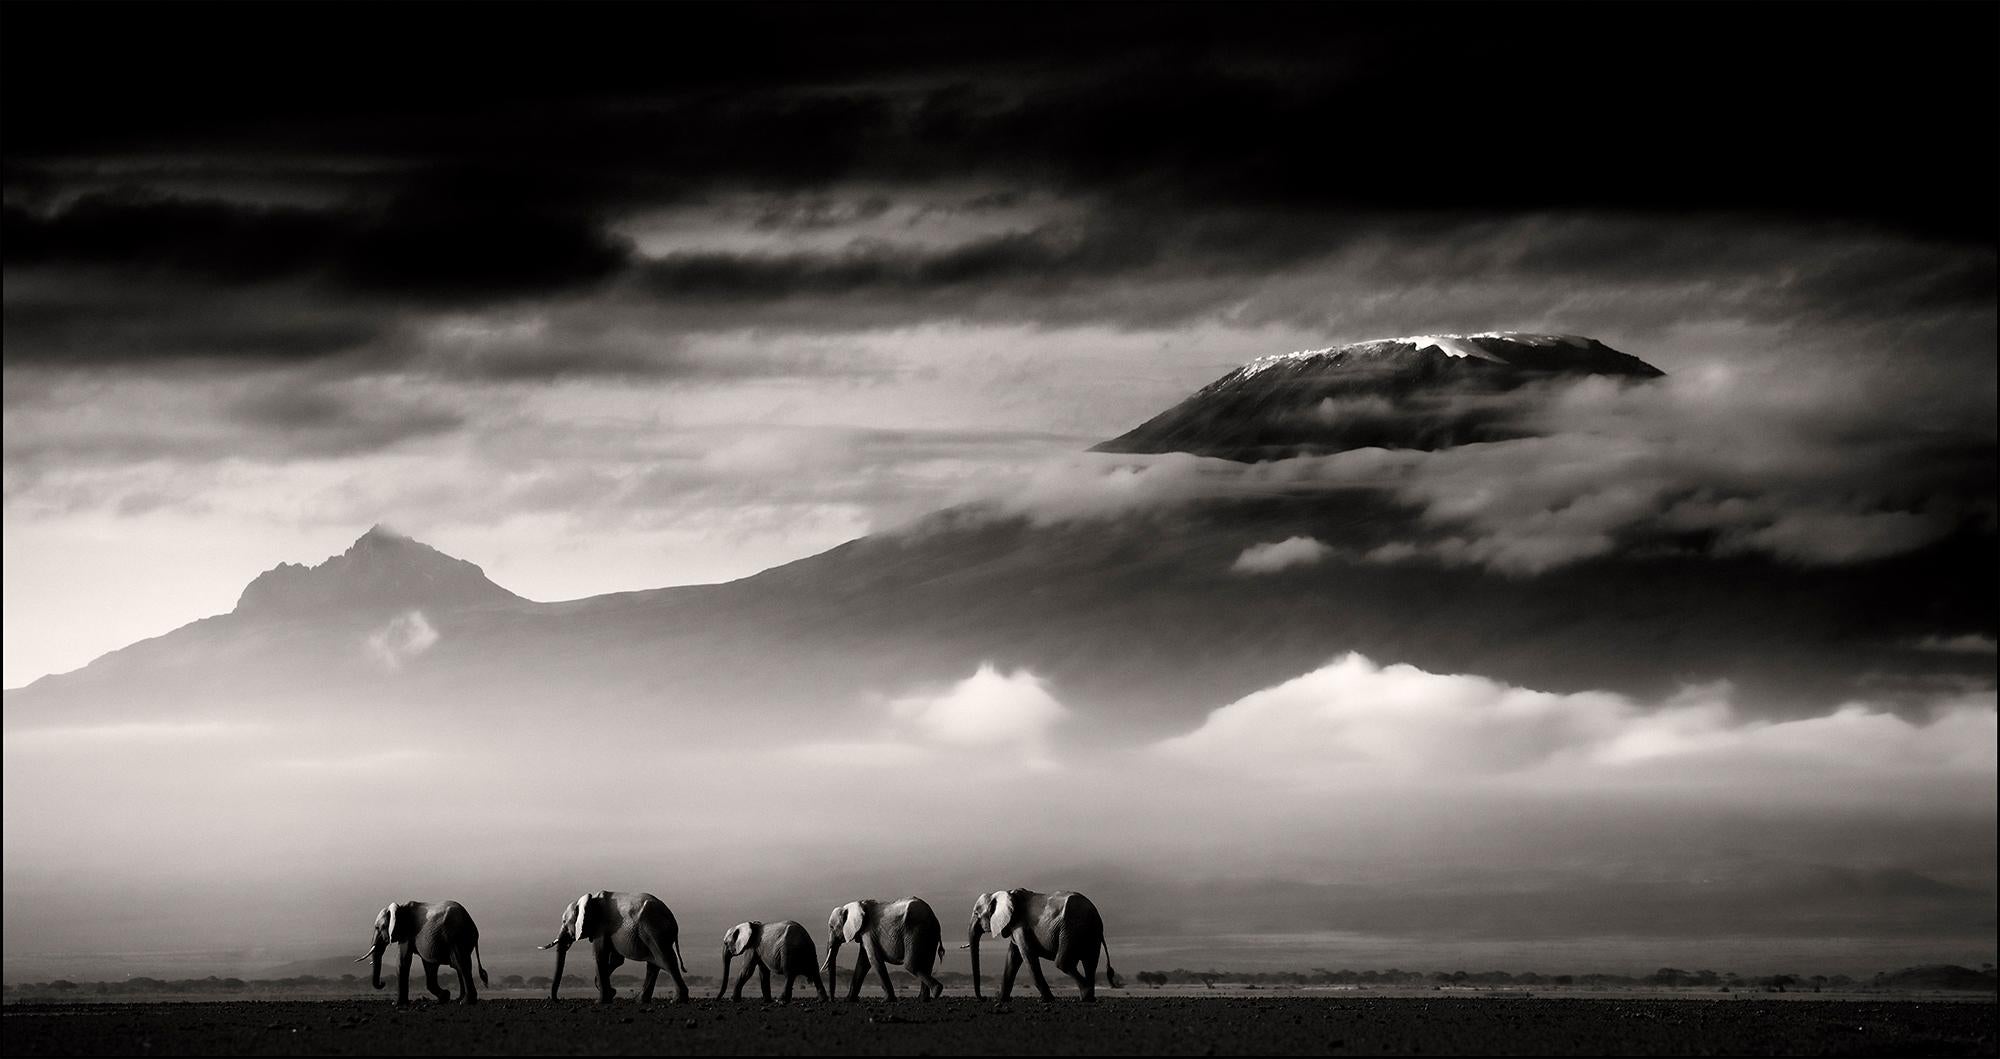 Beyond I, Kenya, Elephant, animal, wildlife, black and white photography